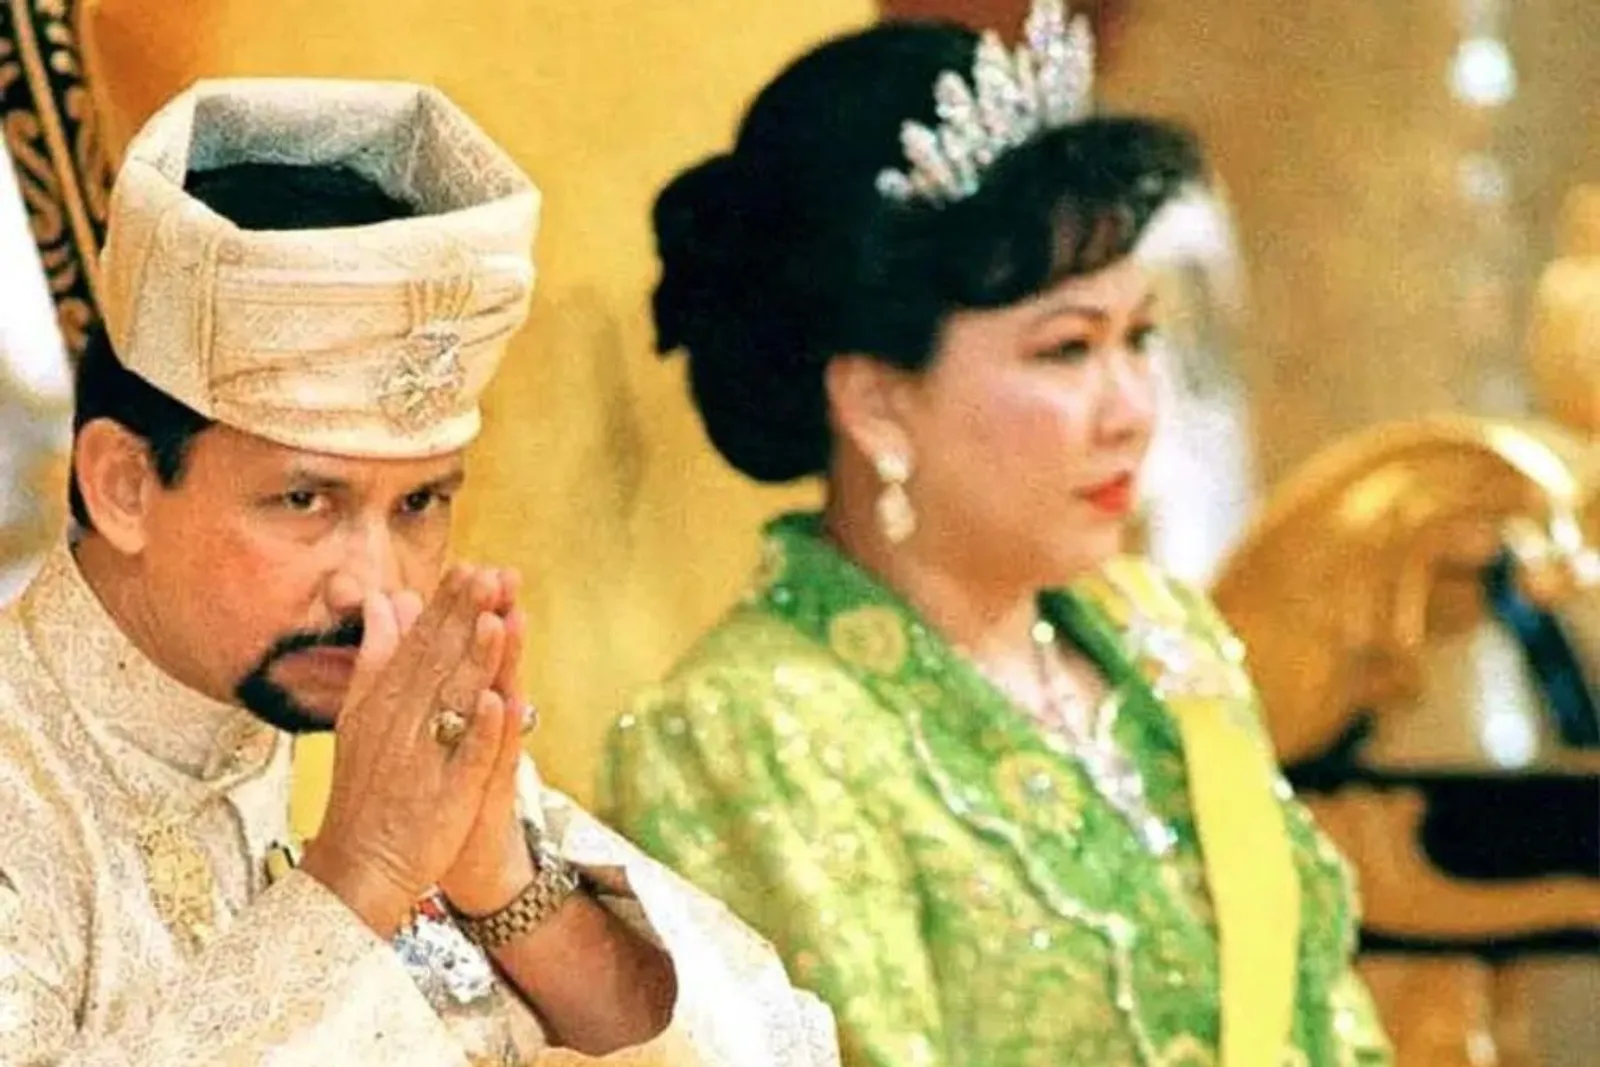 Tuai Kontroversi, Ini Deretan Perempuan yang Jadi Istri Sultan Brunei